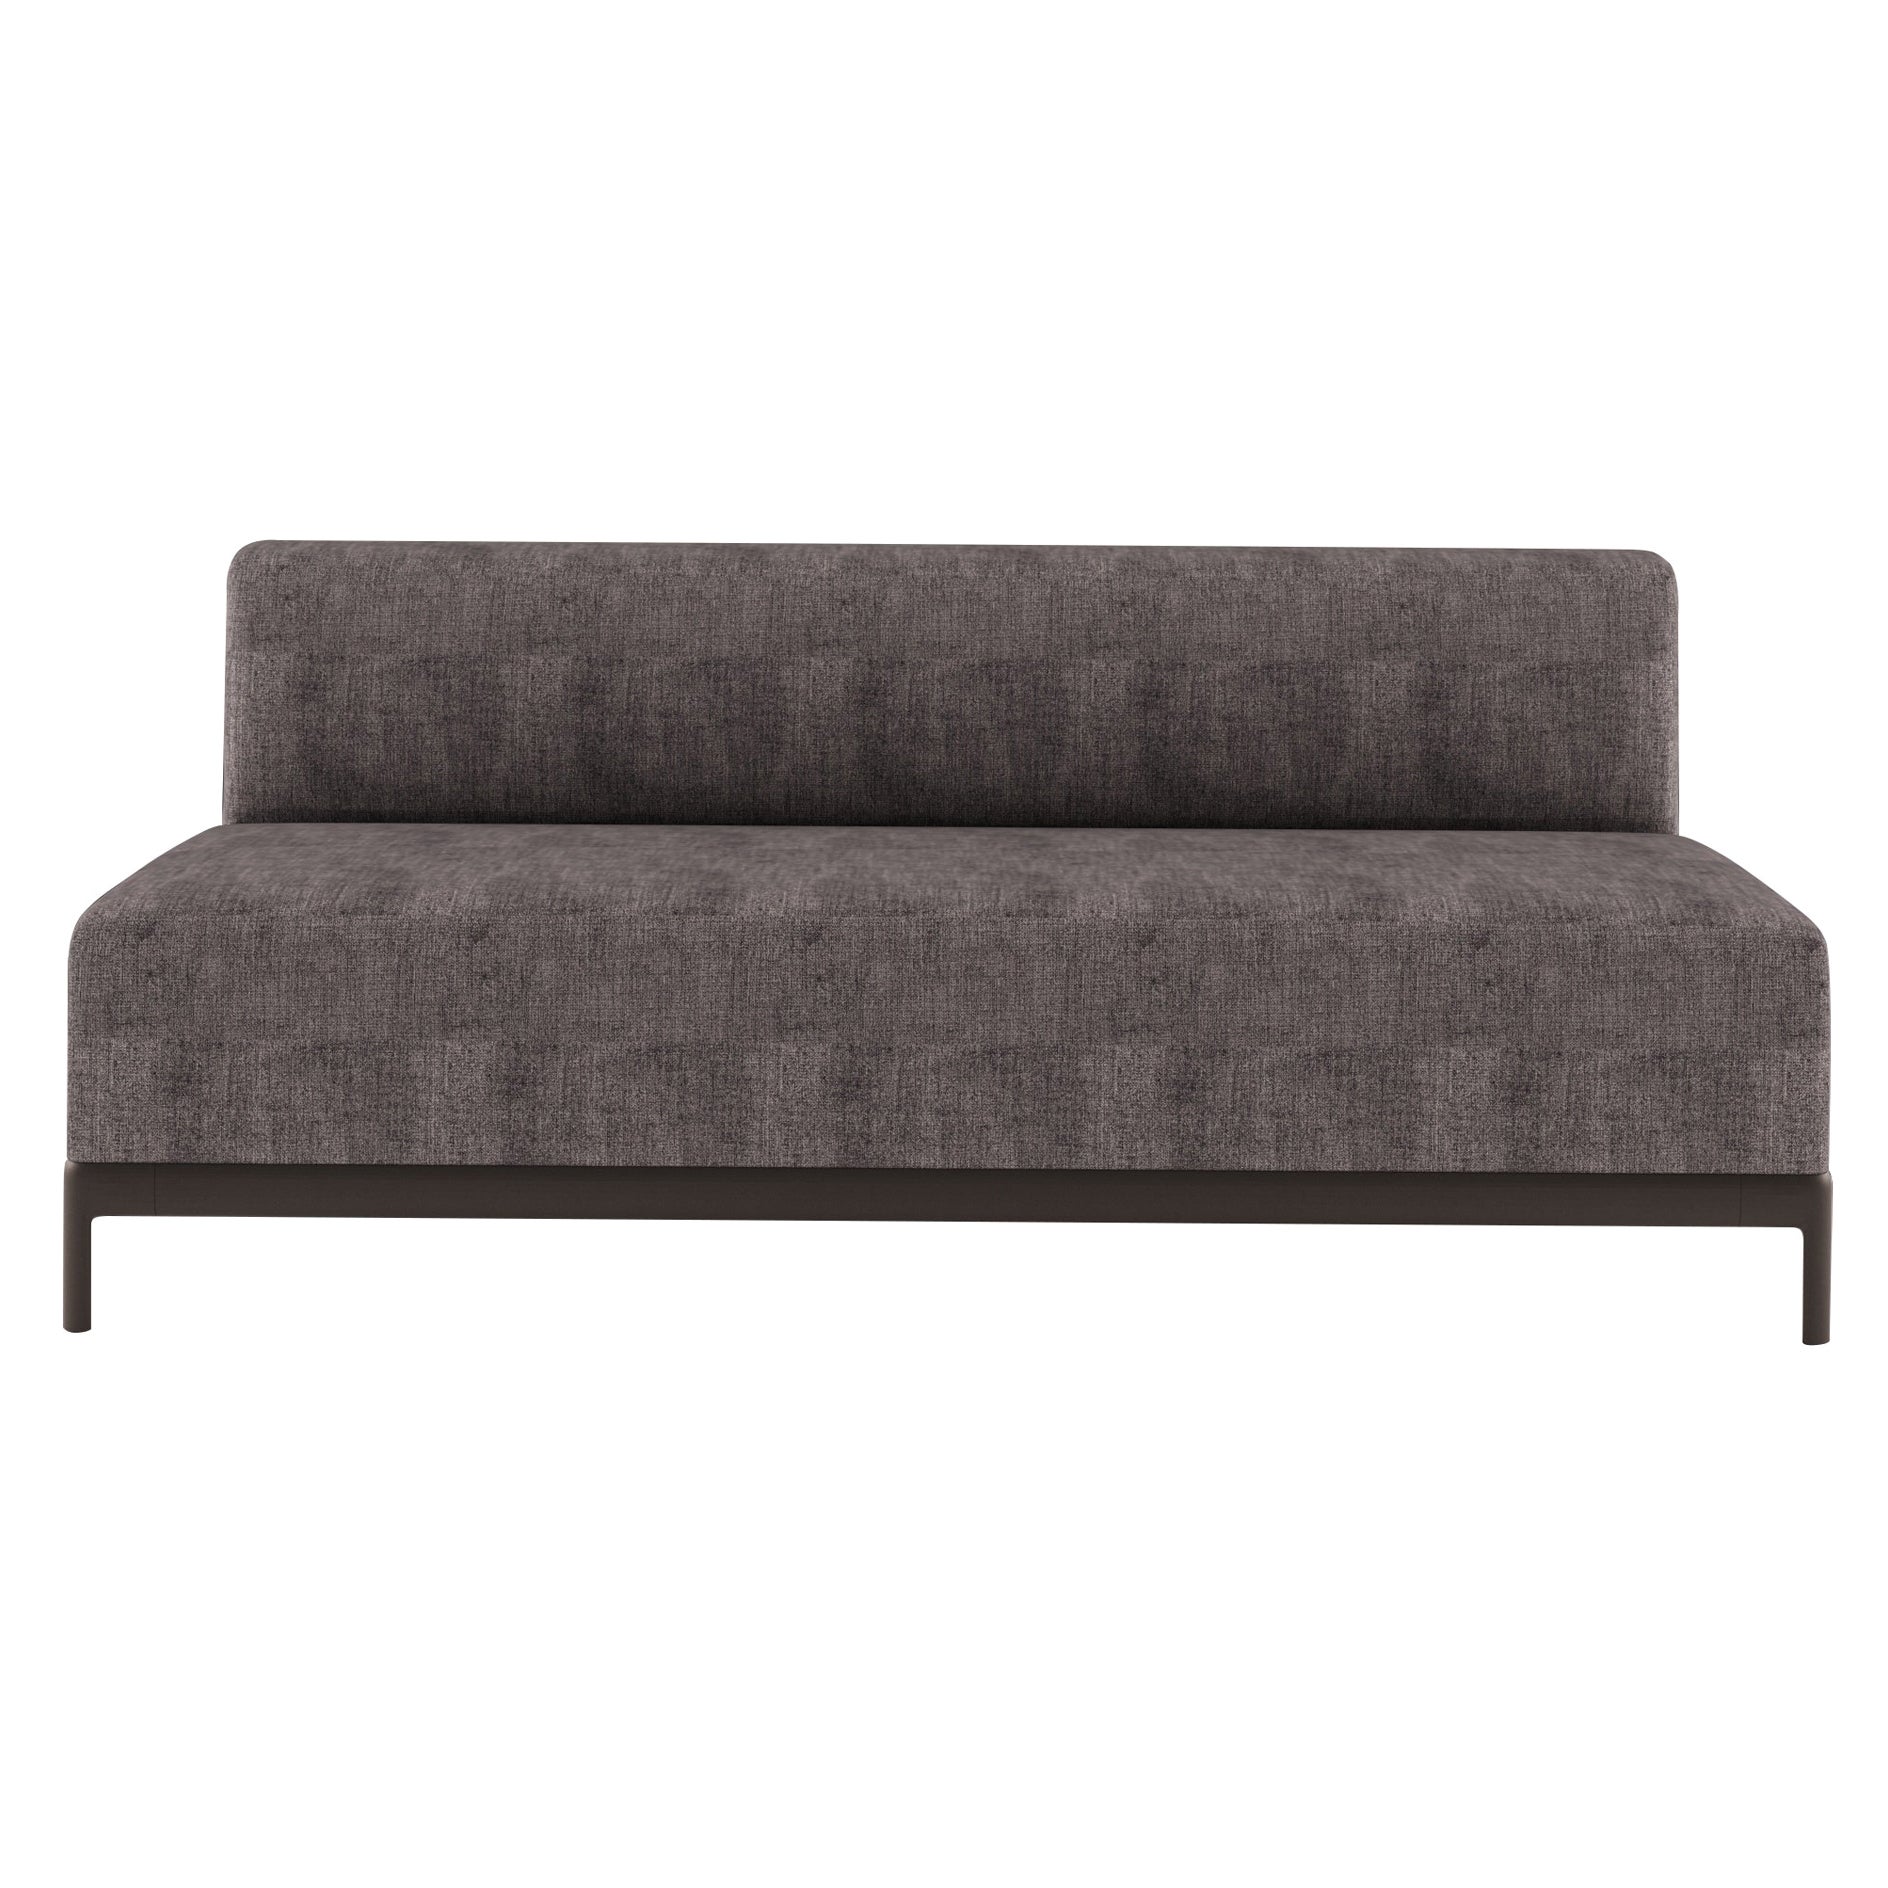 Zentrales Sofa aus weichem Aluminium mit Polsterung und lackiertem Aluminiumrahmen, P34